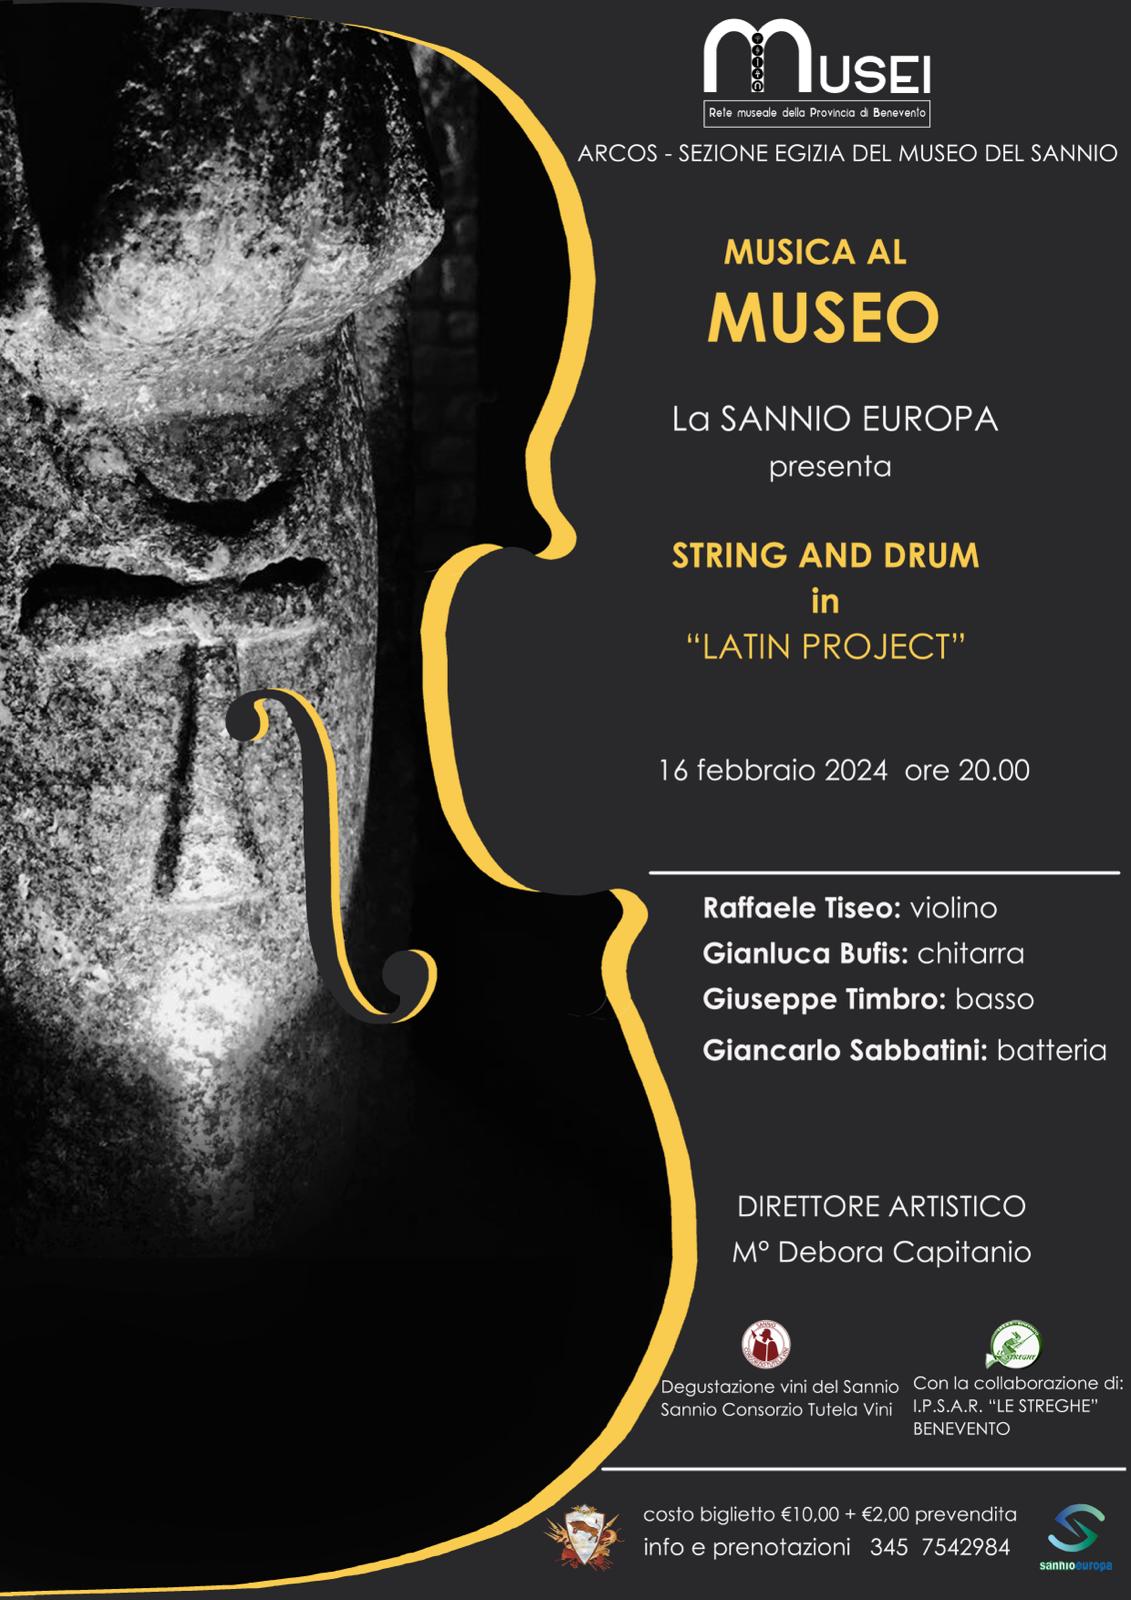 Benevento: venerdì ad Arcos Musica al Museo con “String and Drum in Latin Project”